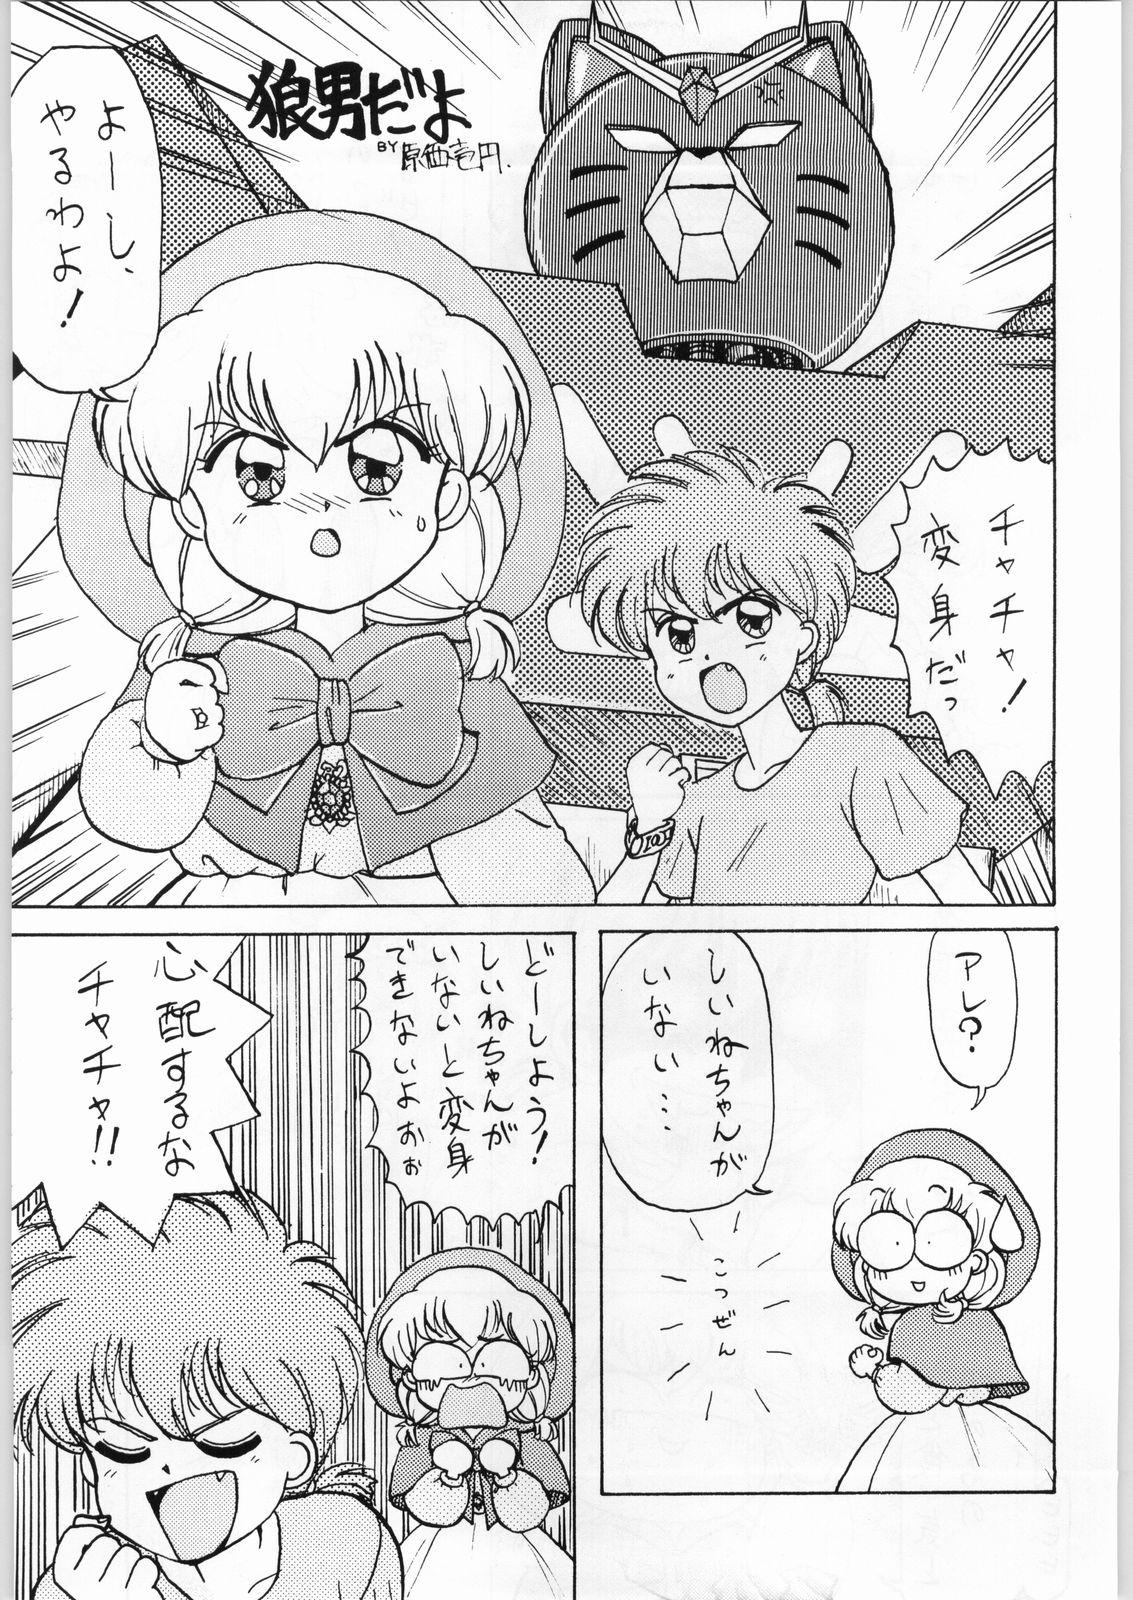 This Dance of Princess 3 - Sailor moon Tenchi muyo Akazukin cha cha Minky momo Ng knight lamune and 40 Teenager - Page 6